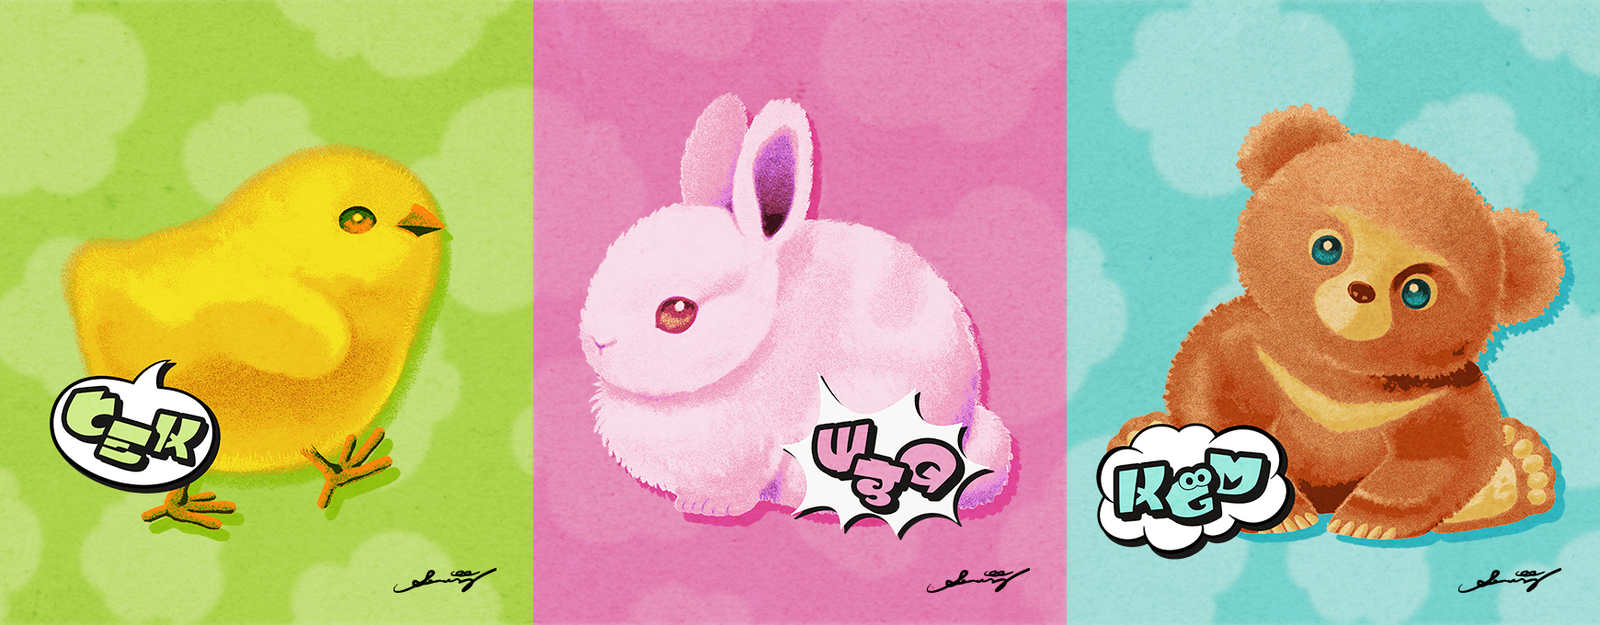 Splatoon: baby chicks vs. baby bunnies vs. baby bears